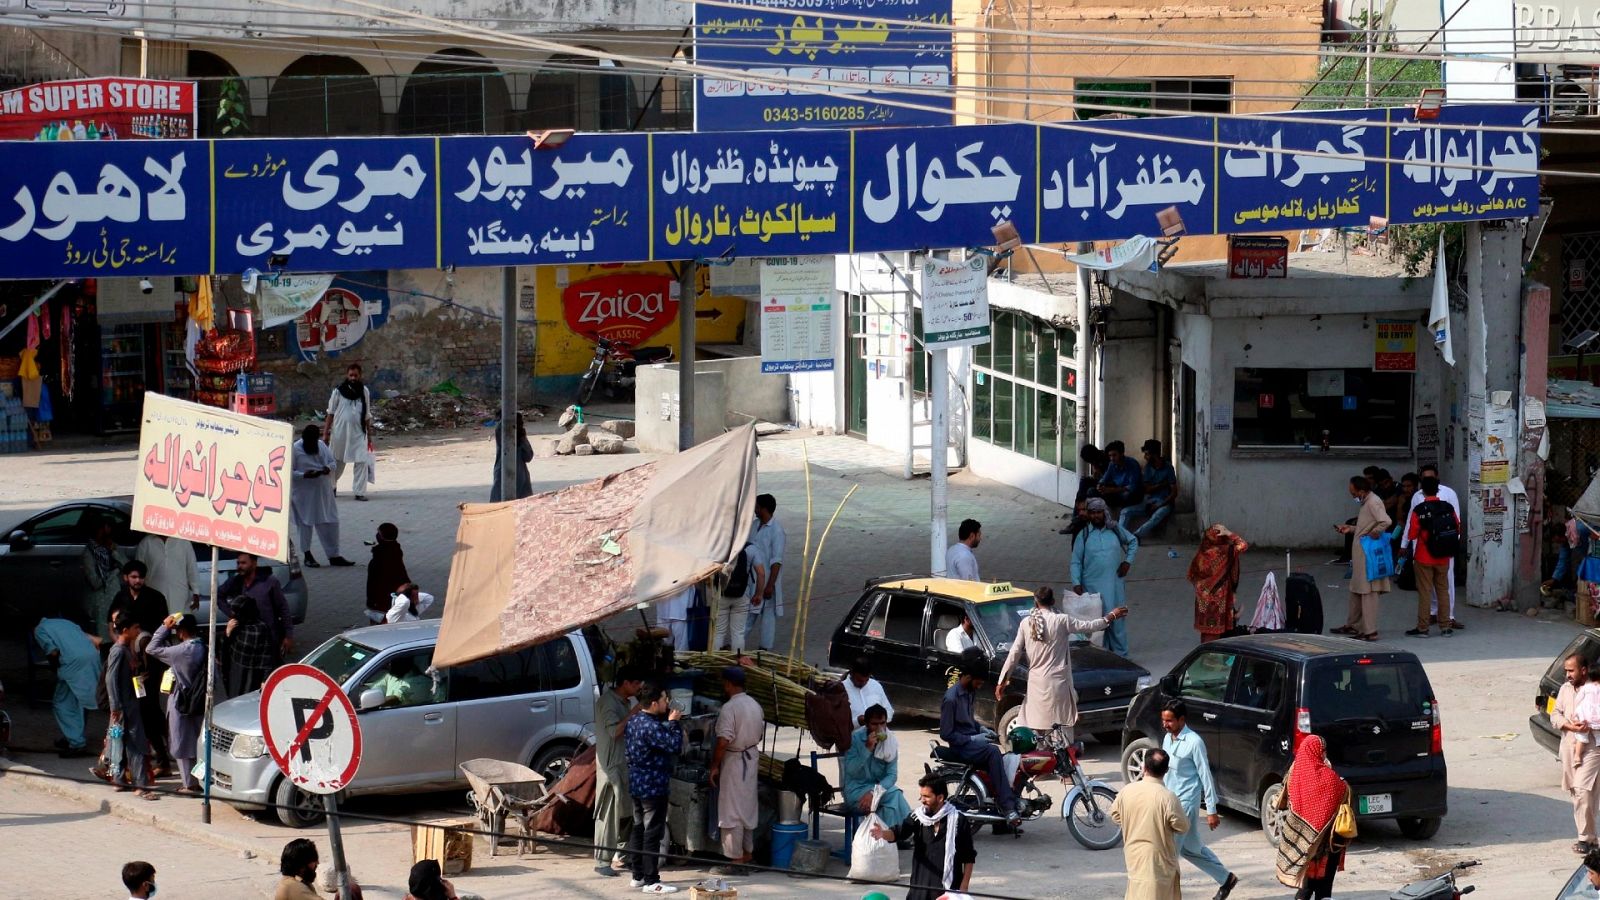 Albares en Pakistán: "Vengo a buscar vías seguras para no dejar a nadie atrás"